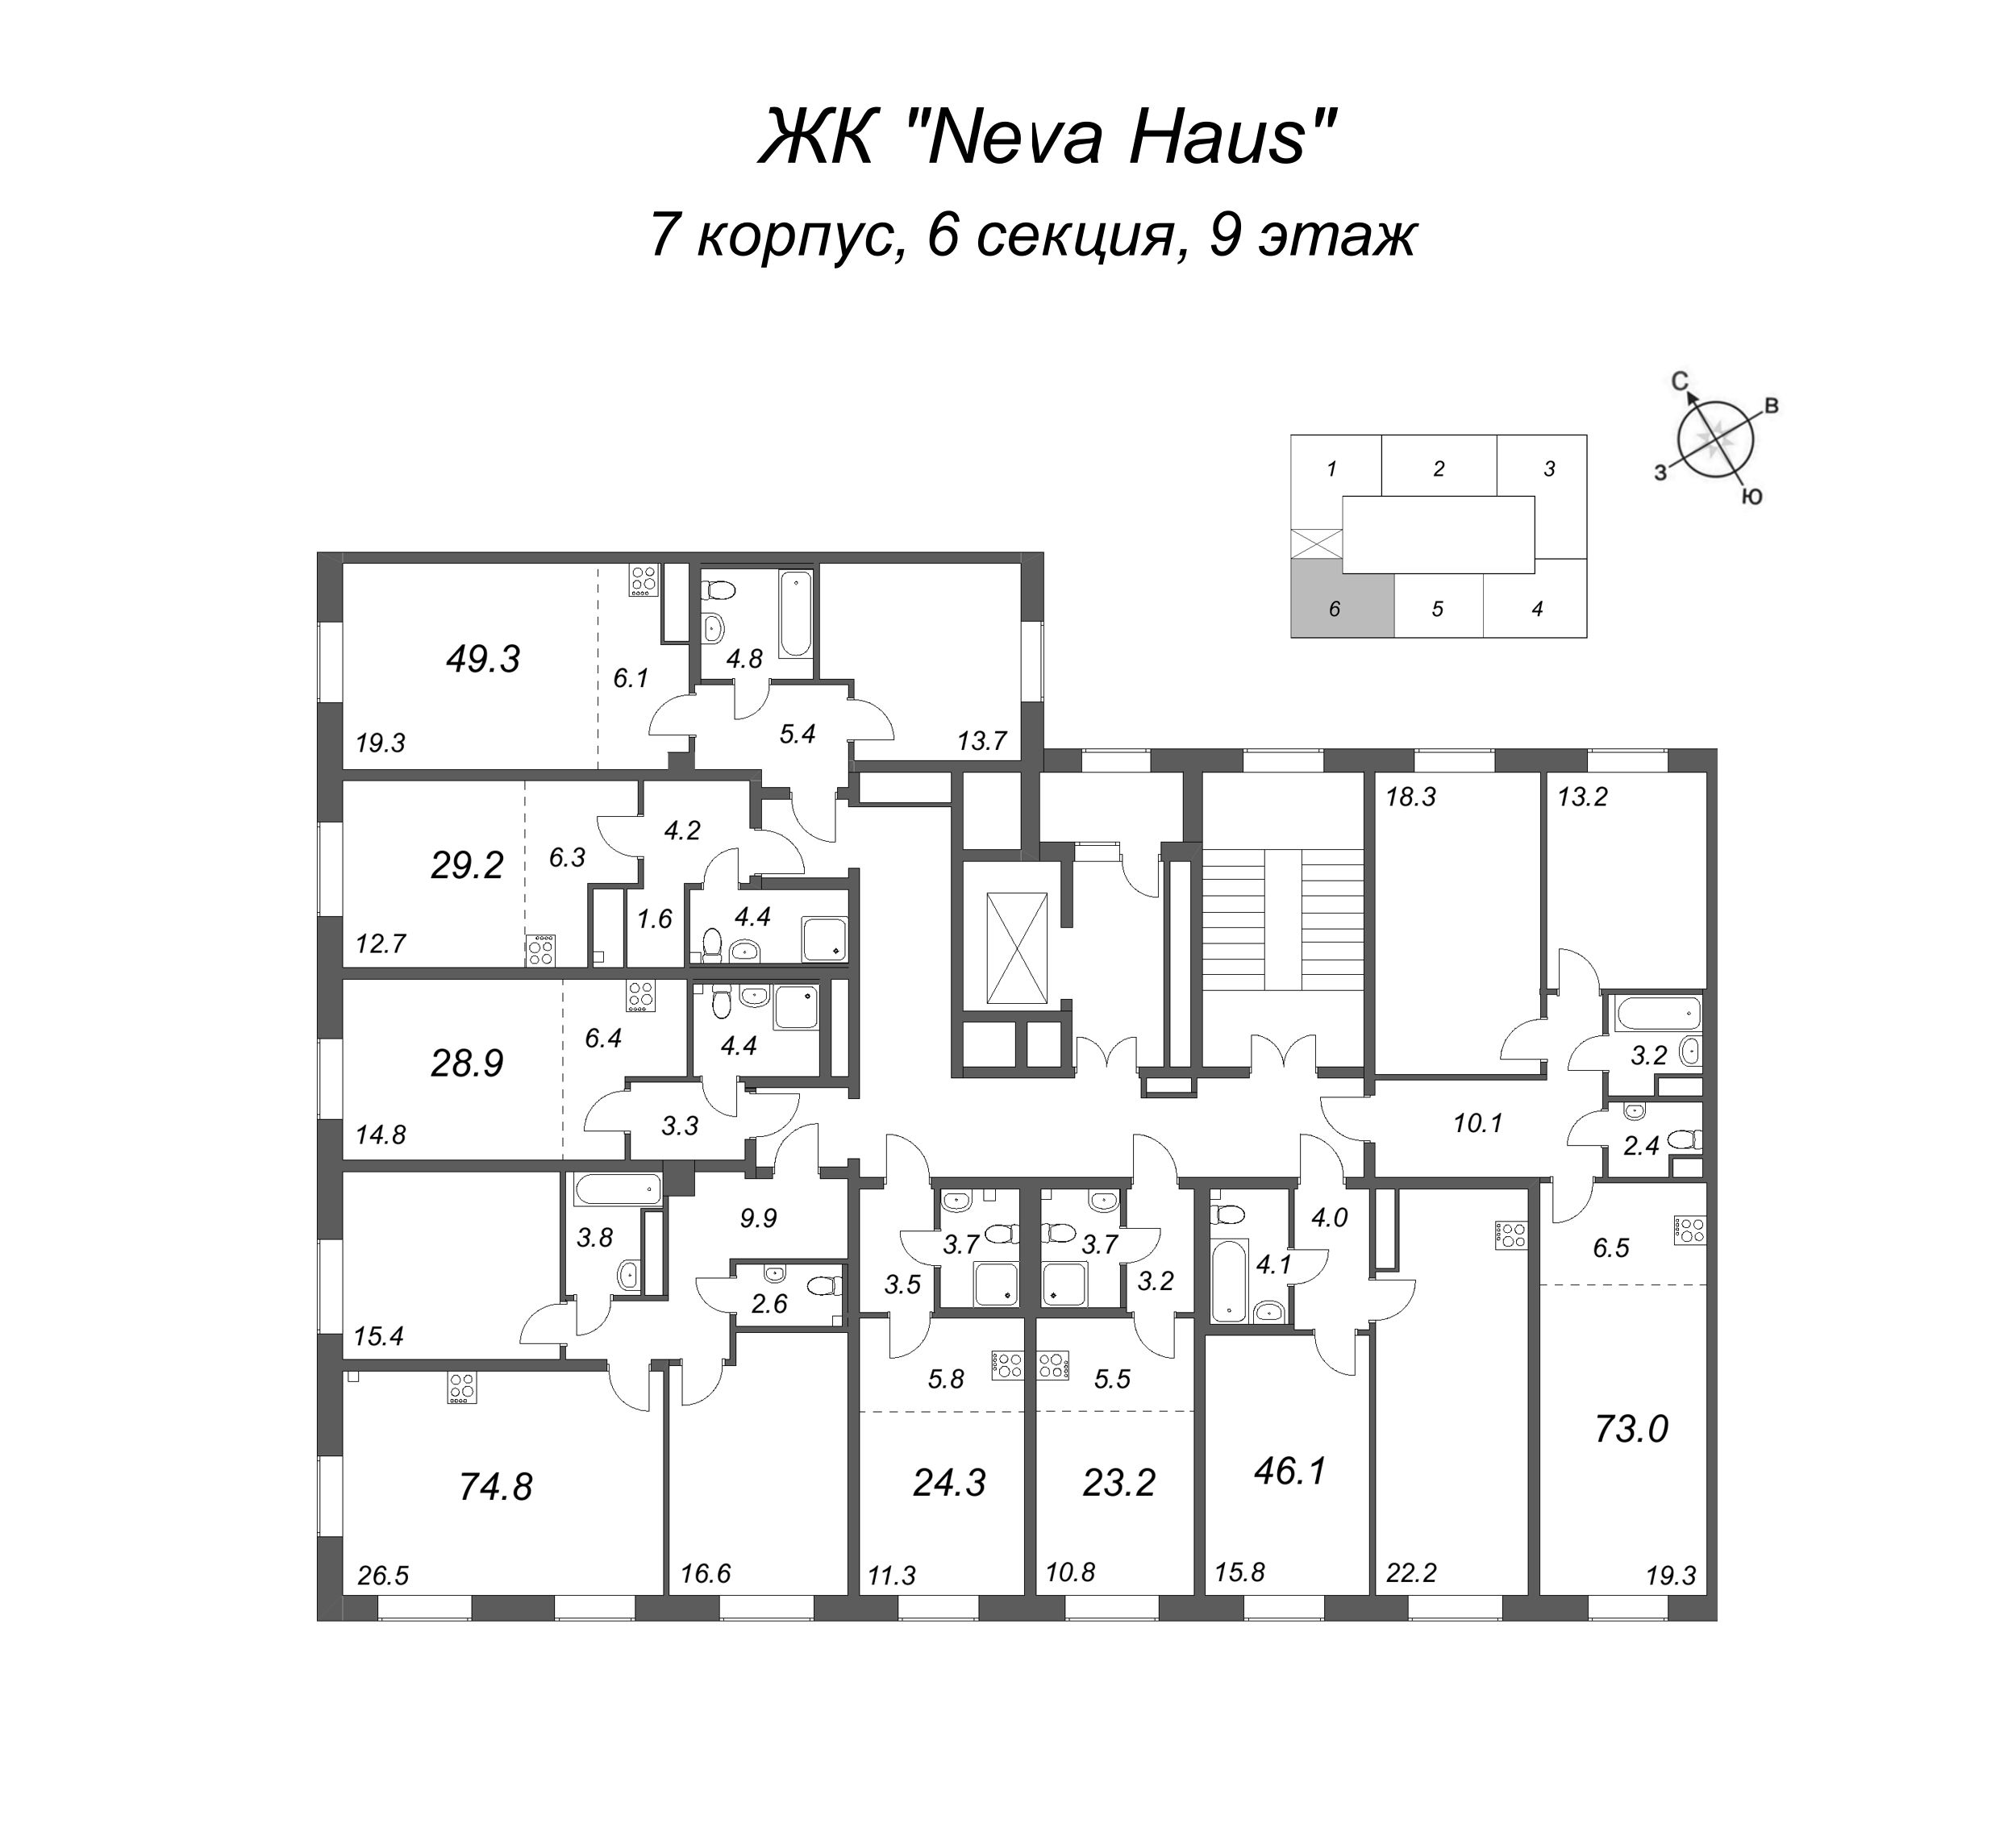 2-комнатная (Евро) квартира, 49.2 м² в ЖК "Neva Haus" - планировка этажа